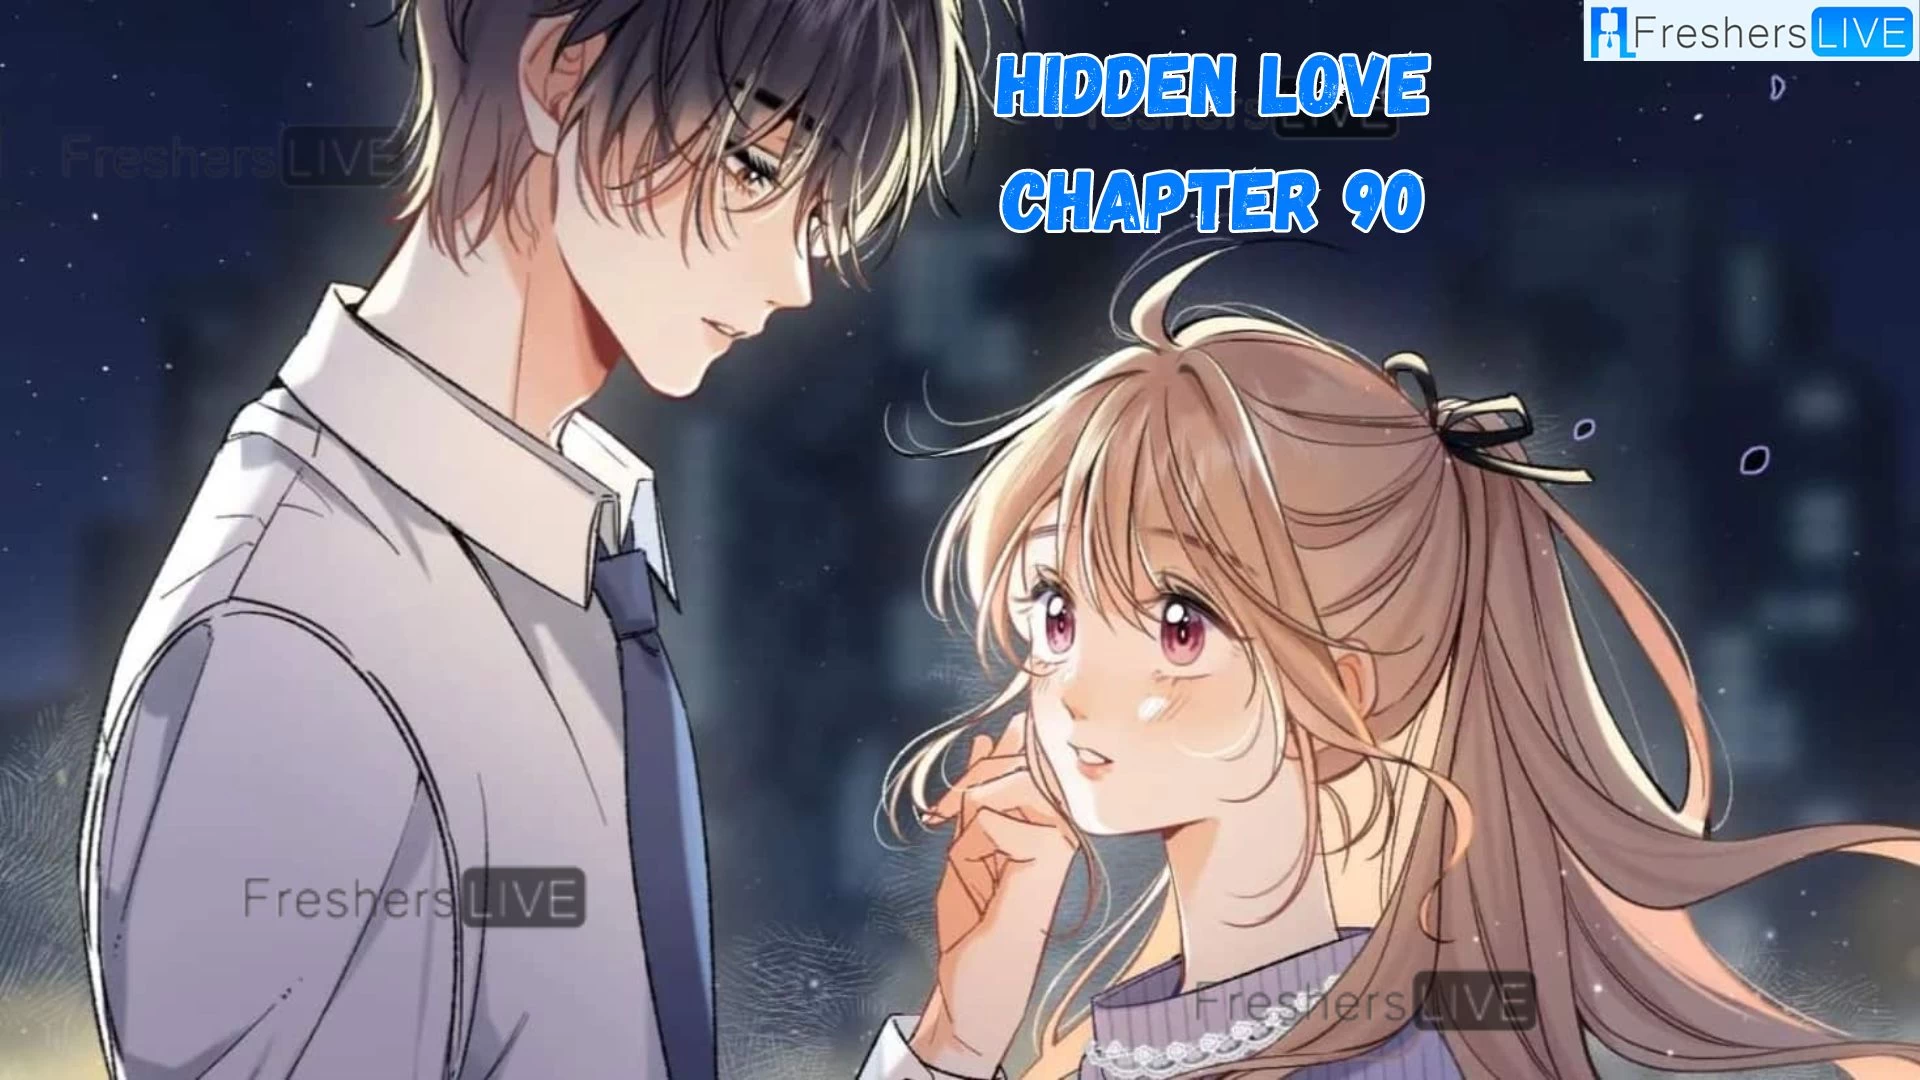 Hidden Love Capítulo 90 Fecha de lanzamiento, cuenta regresiva de spoilers, escaneo sin procesar, resumen, ¿dónde leer Hidden Love Capítulo 90?